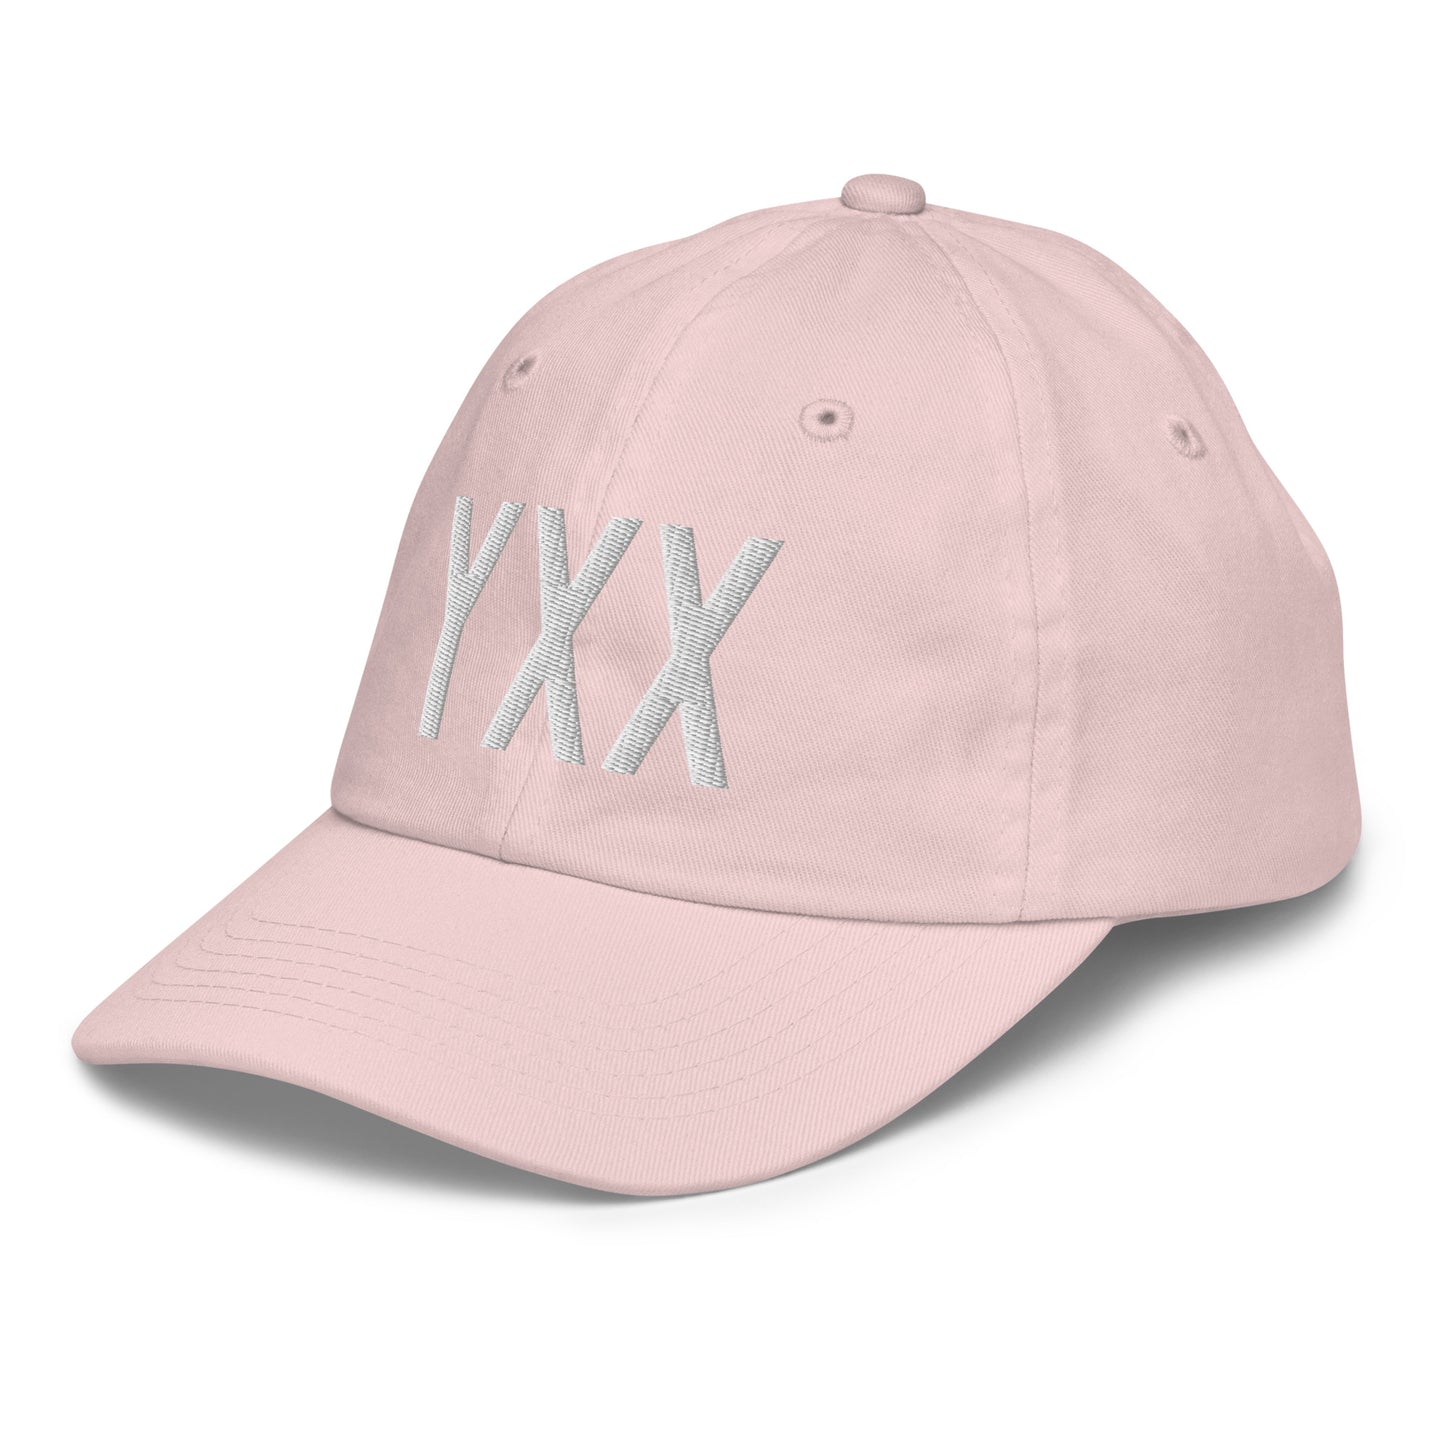 Airport Code Kid's Baseball Cap - White • YXX Abbotsford • YHM Designs - Image 33